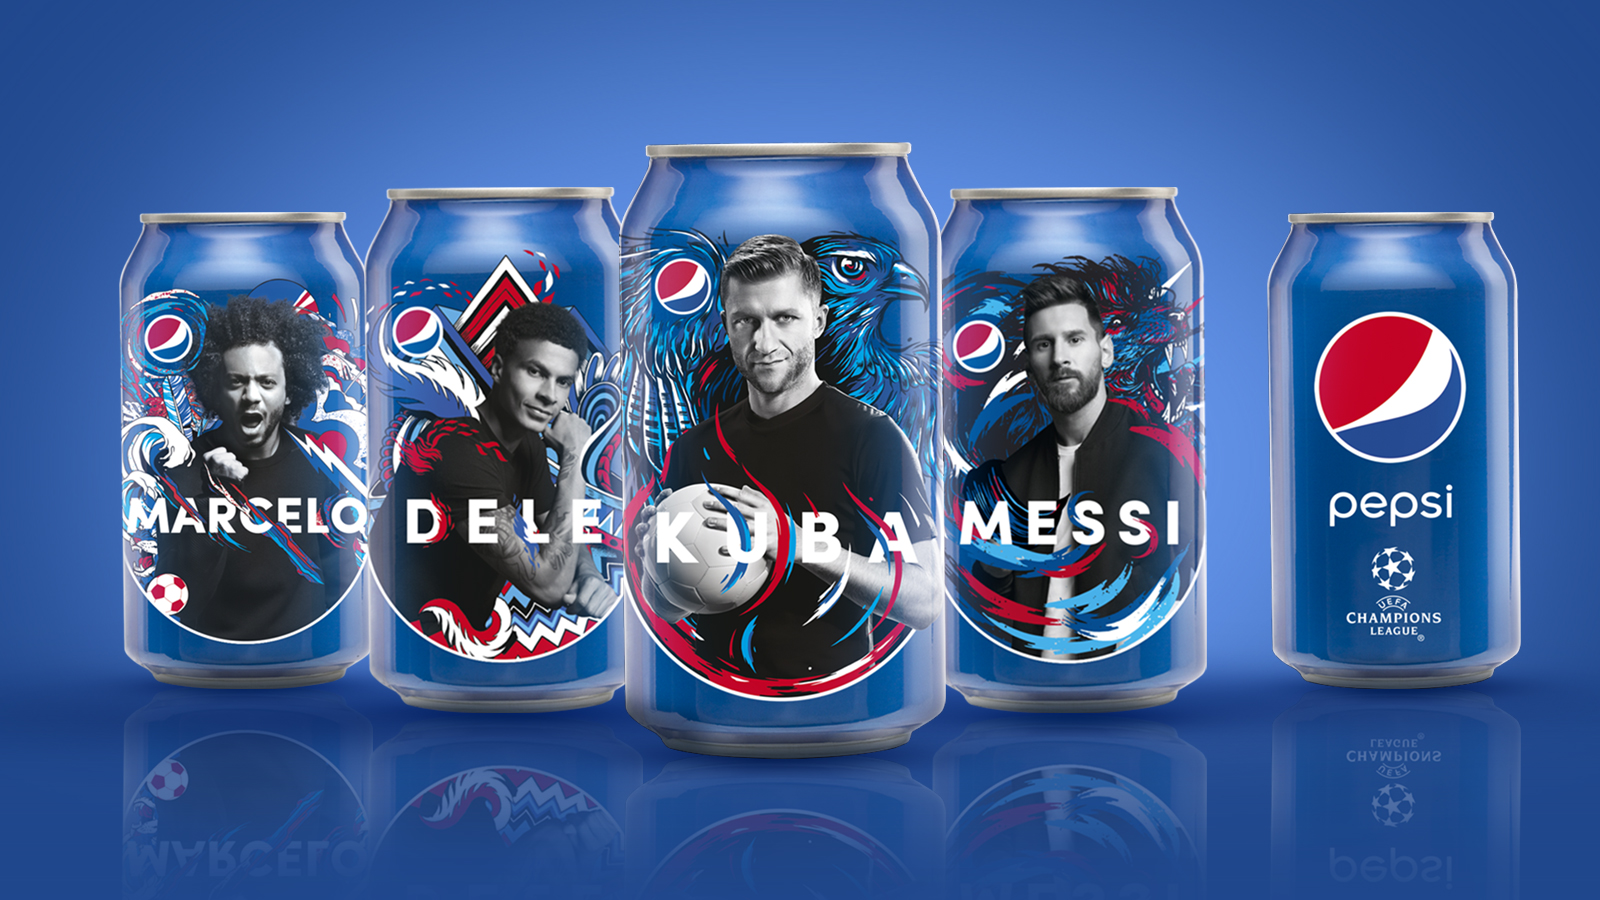 Nowa globalna telewizyjna kampania reklamowa Pepsi łączy piłkę nożną i słynnych piłkarzy